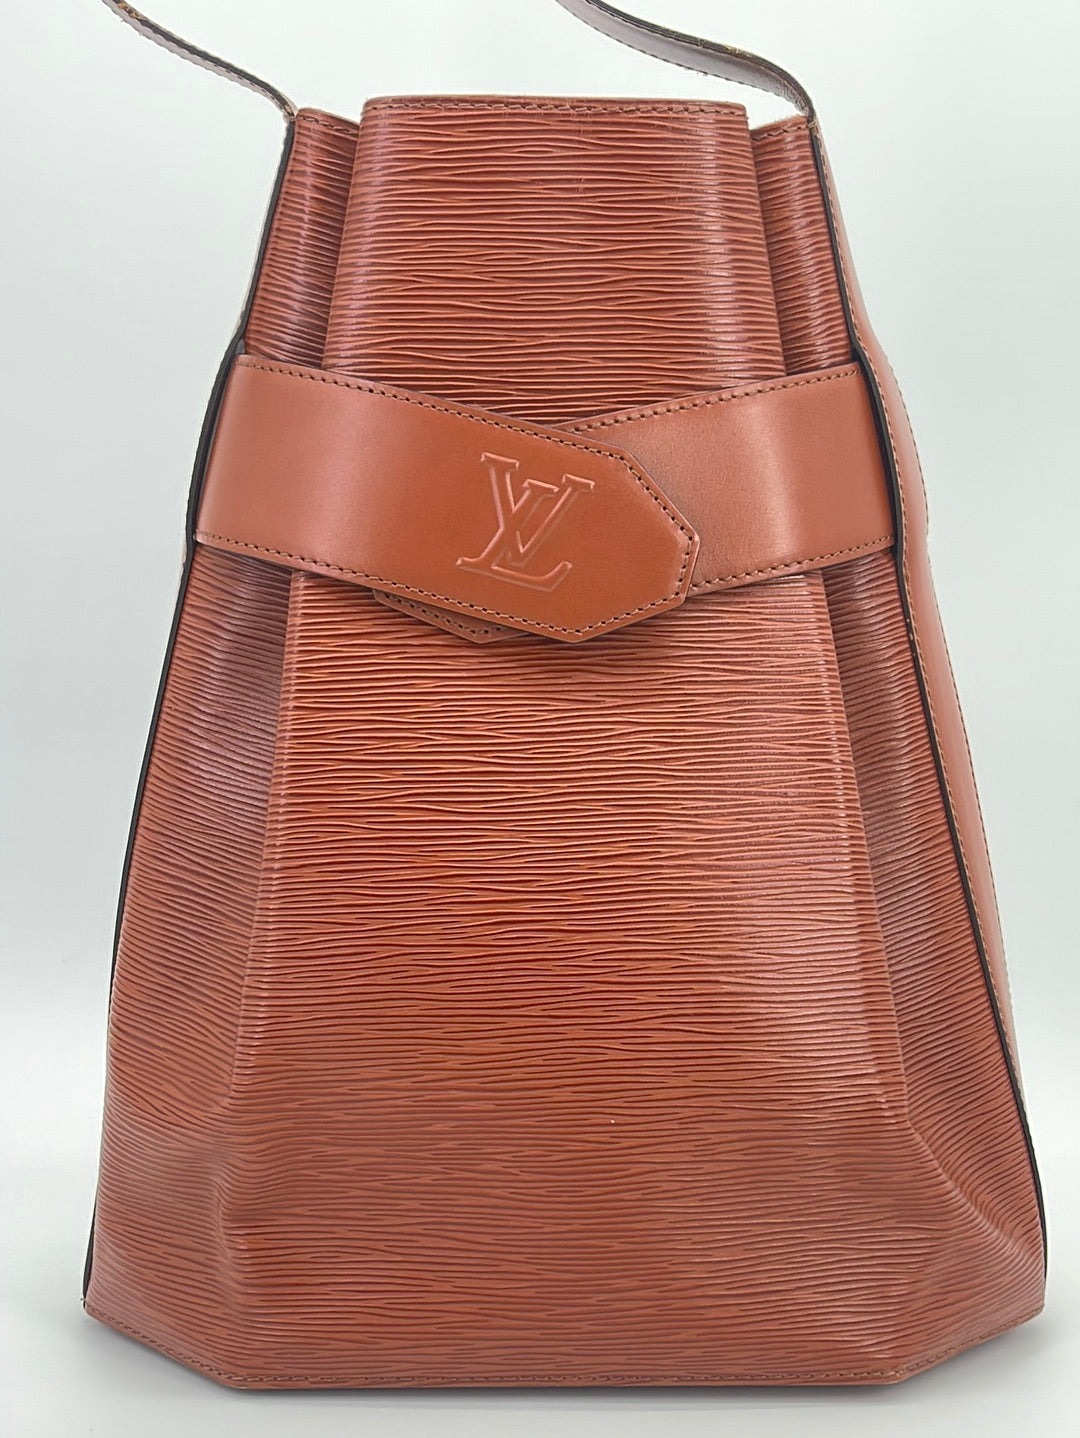 *Mint Condition!* Authentic Louis Vuitton LV sac d'epaule bag